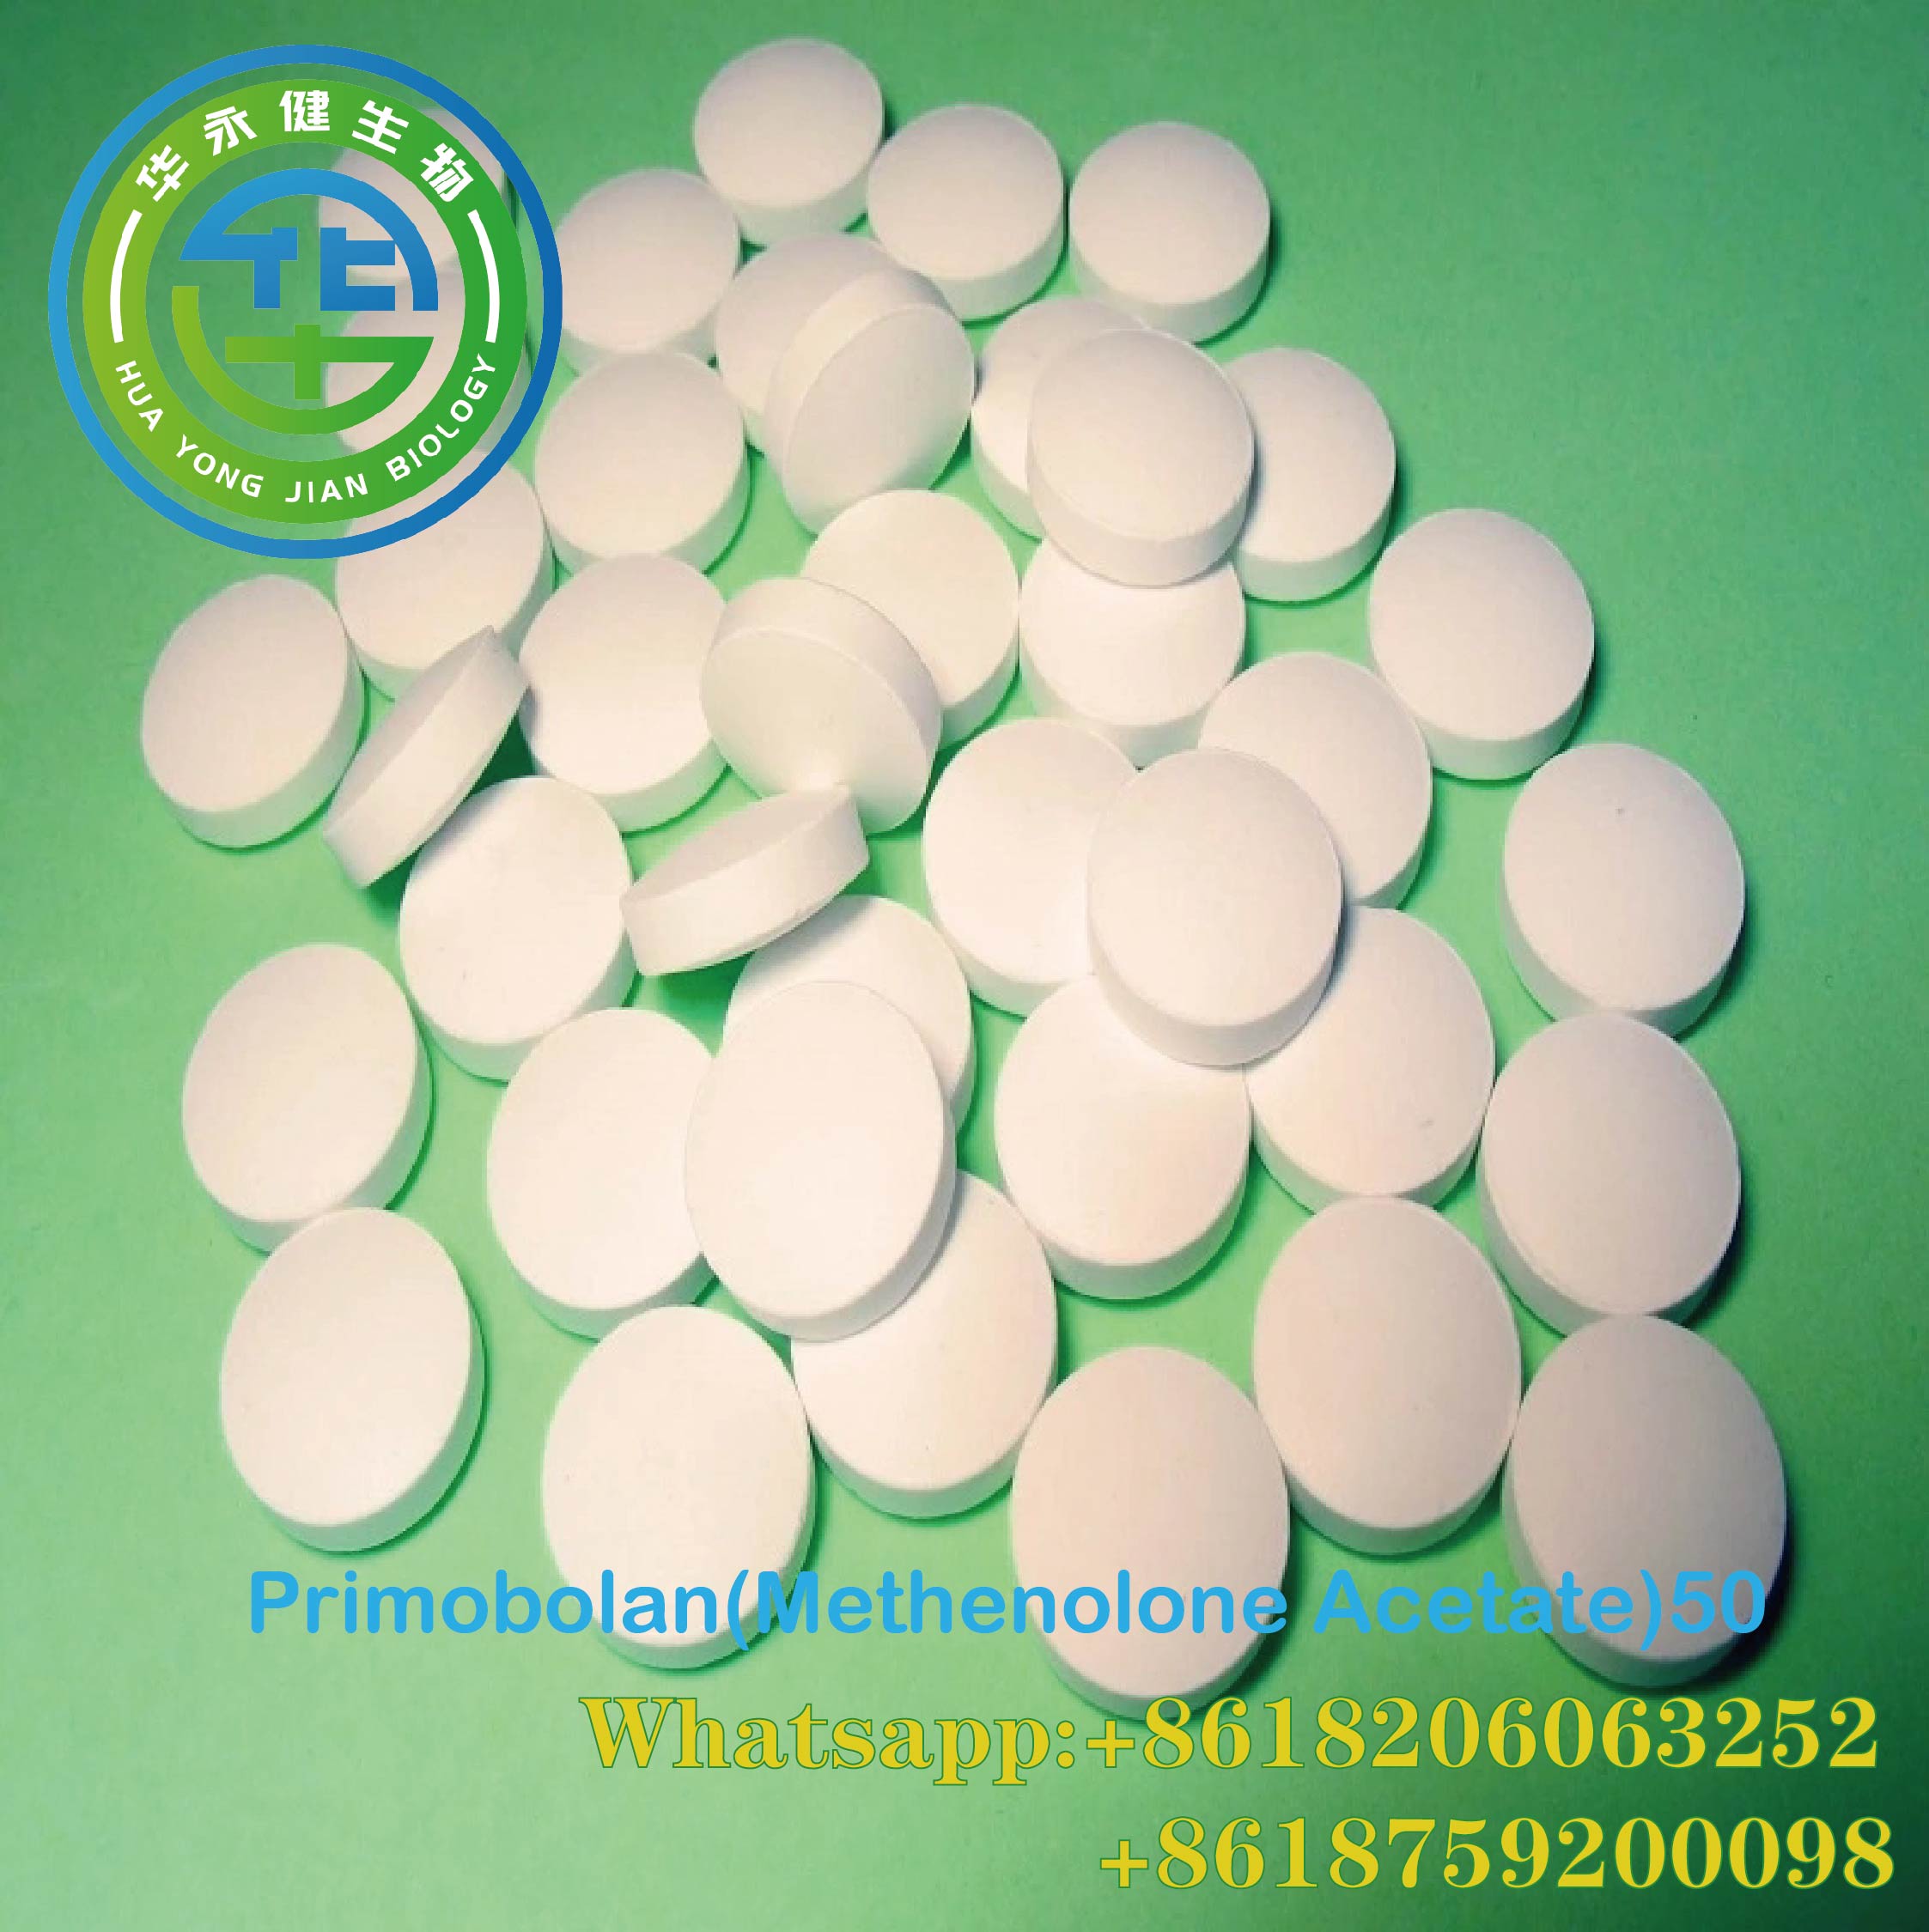 Anabolic Methenolone Acetate 50mg*100/bottle Powder Oral Primobolan Depot CAS 434-05-9 